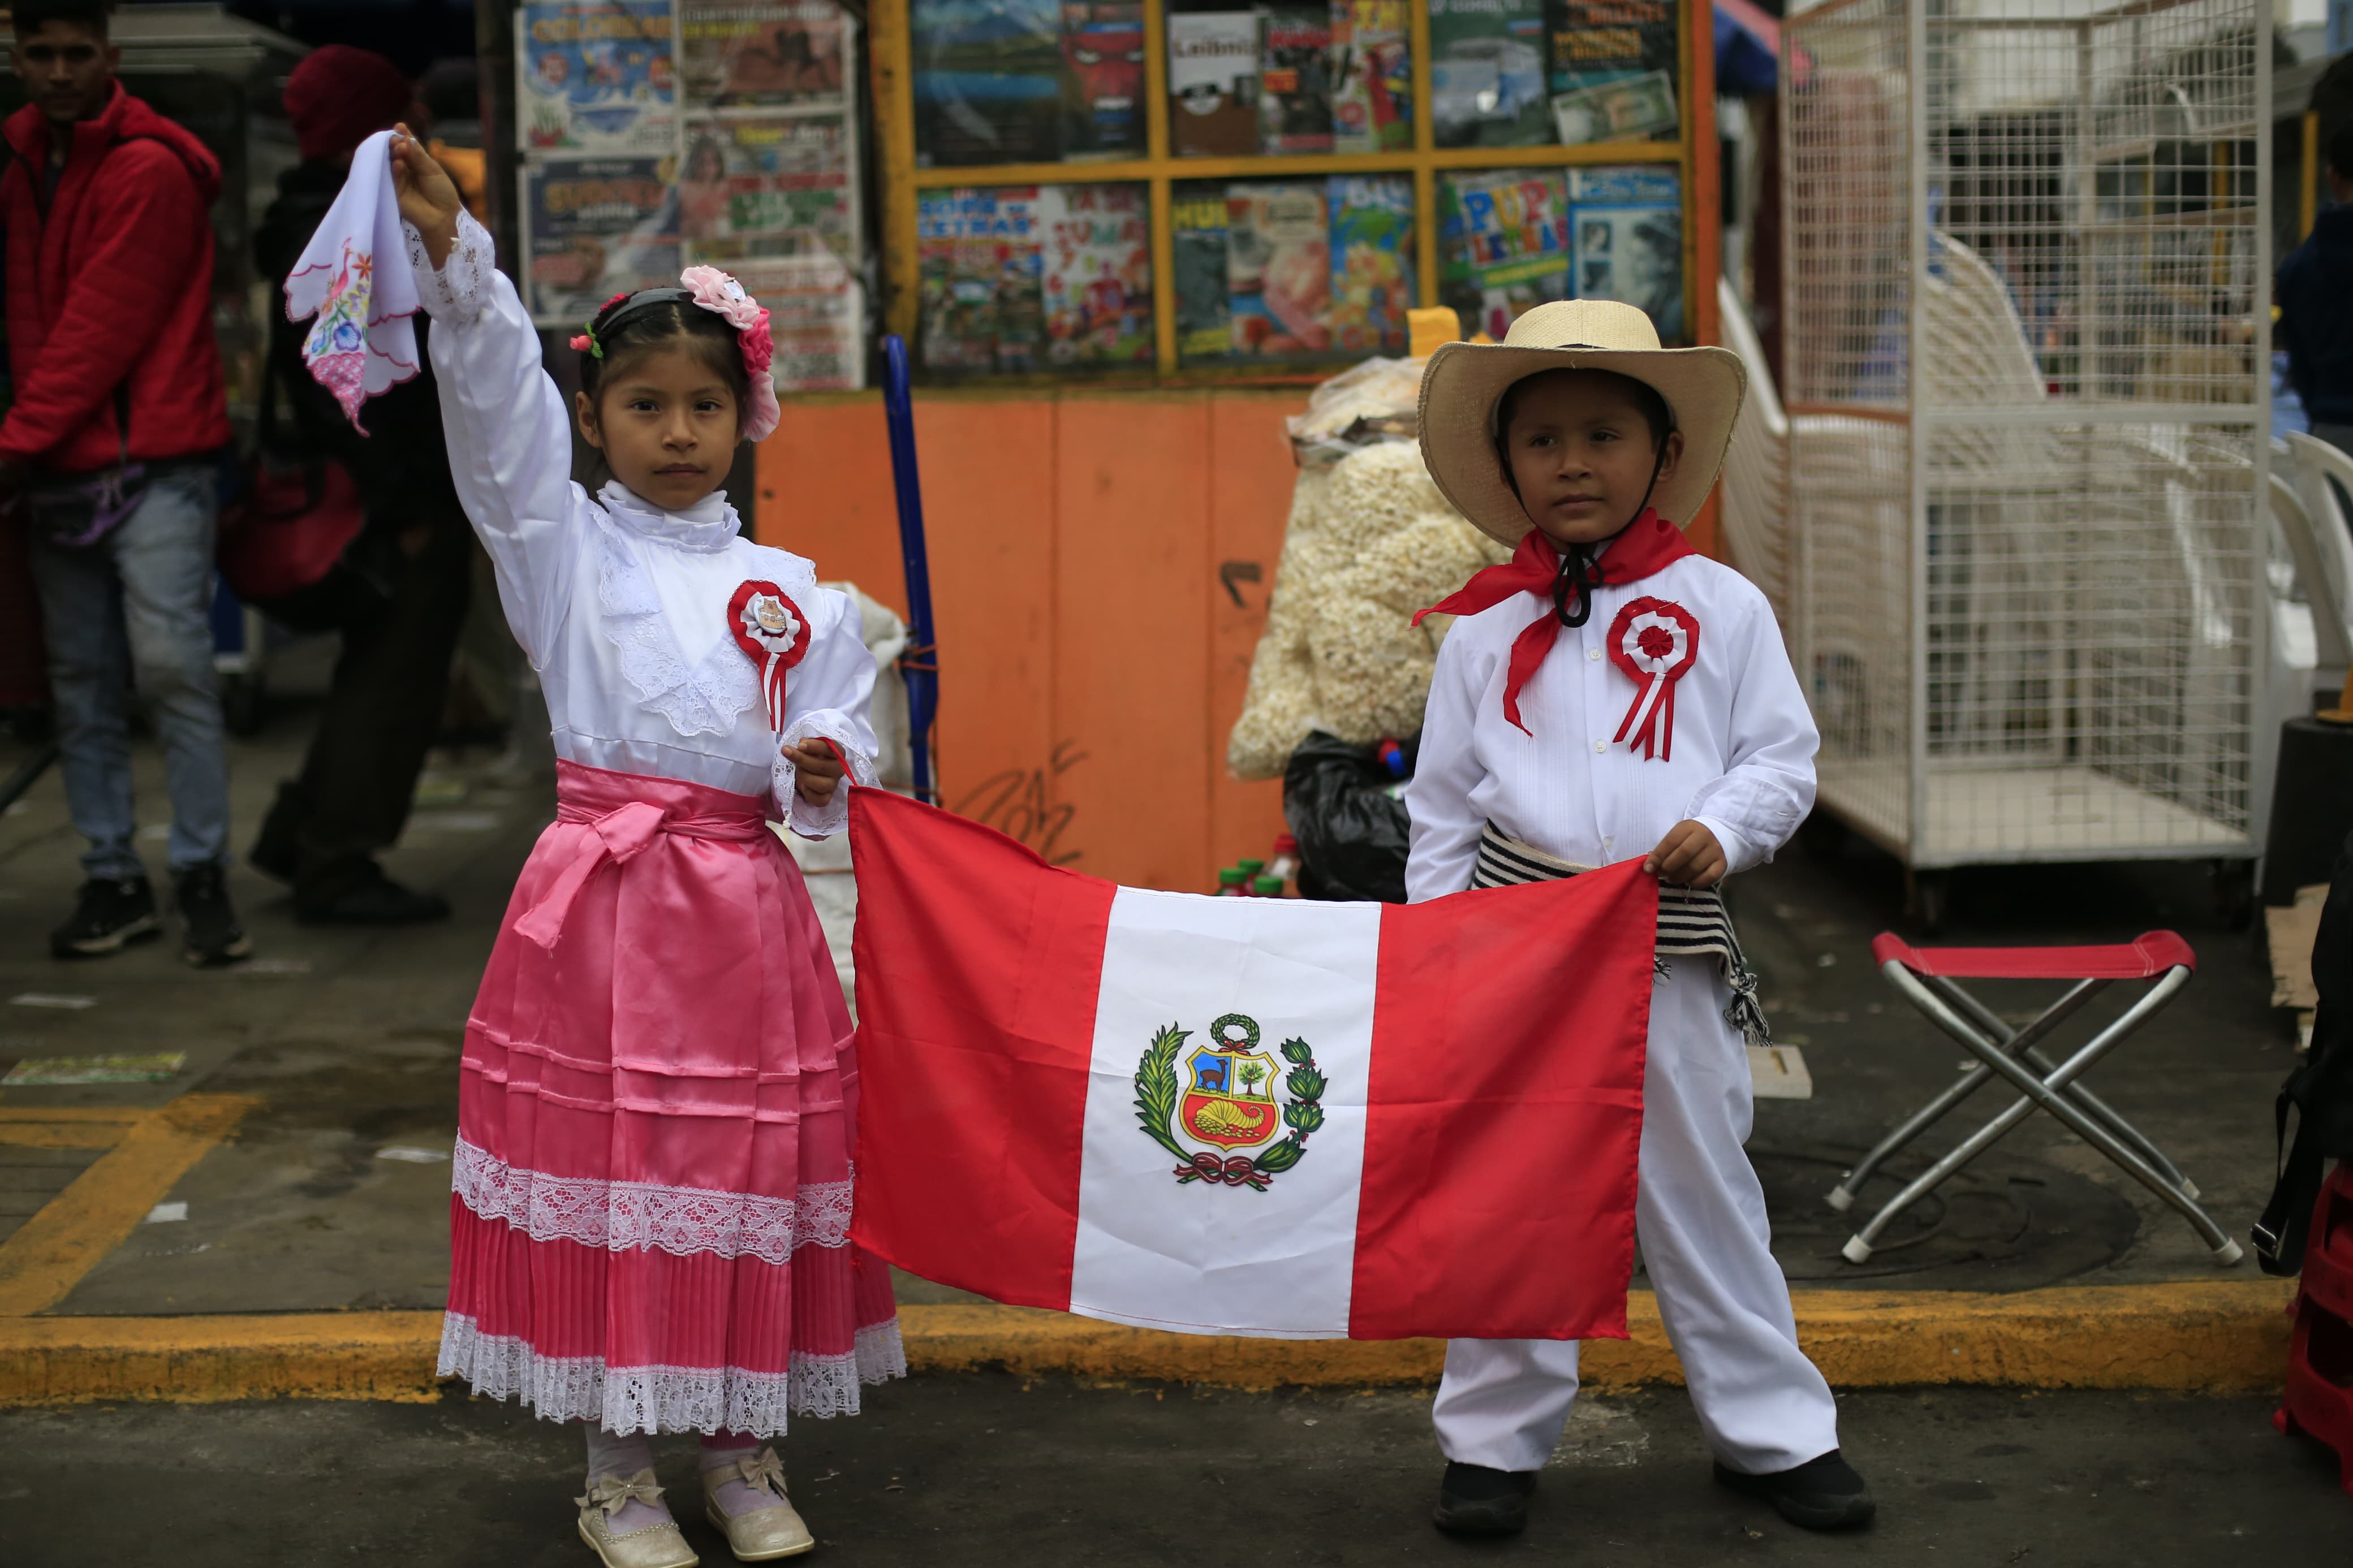  (10) AMOR POR LA PATRIA. Niños vestidos para bailar marinera posan con la bandera peruana.